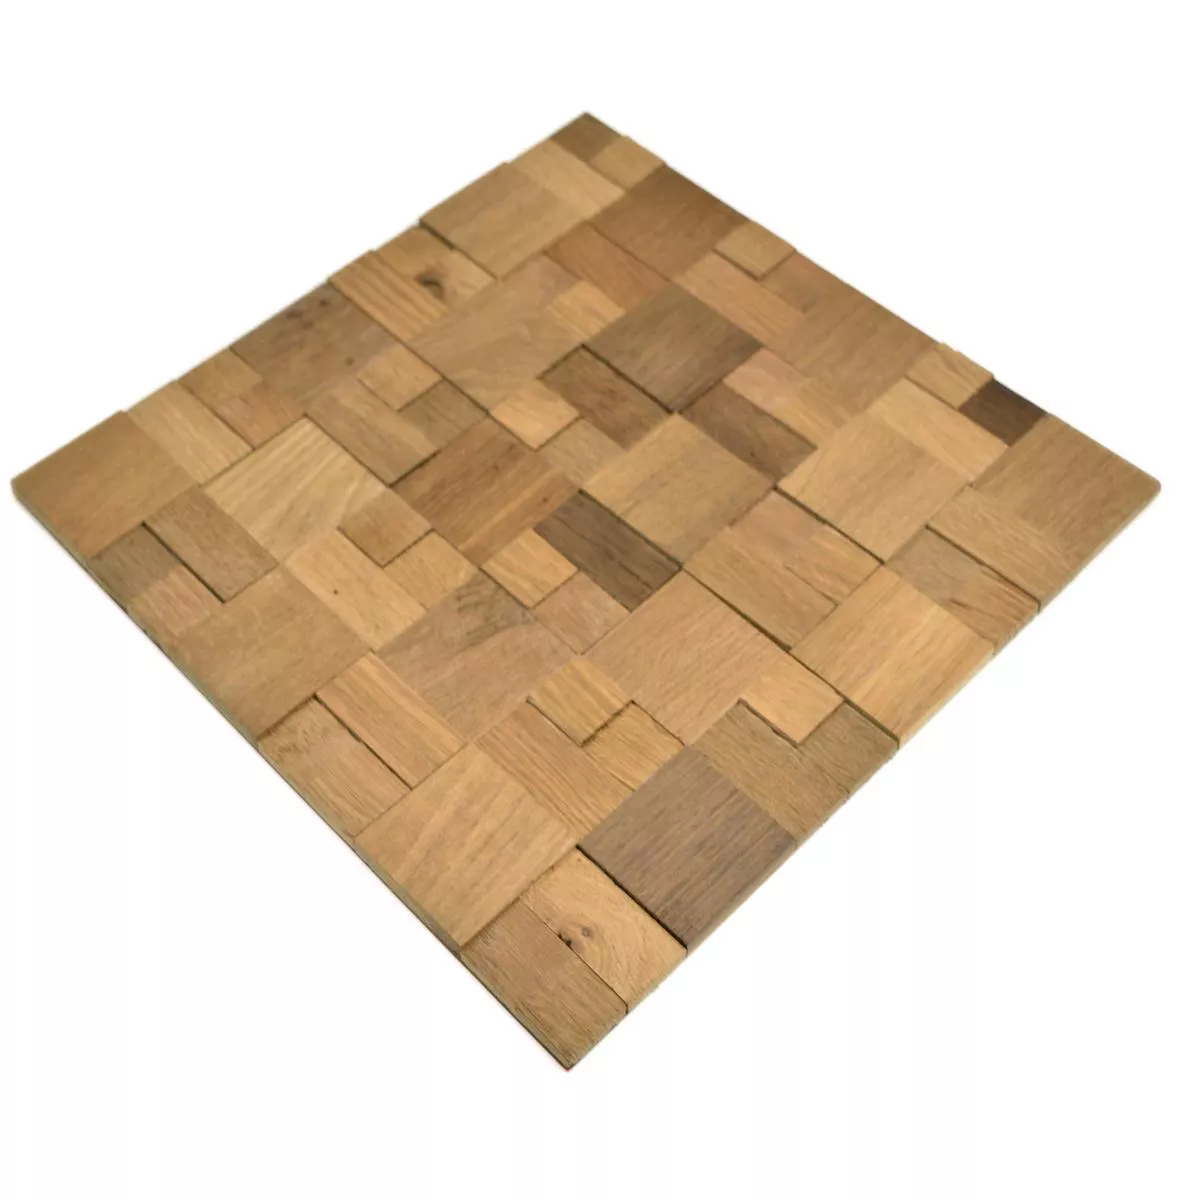 Sample Mosaic Tiles Wood Paris Self Adhesive 3D Brown